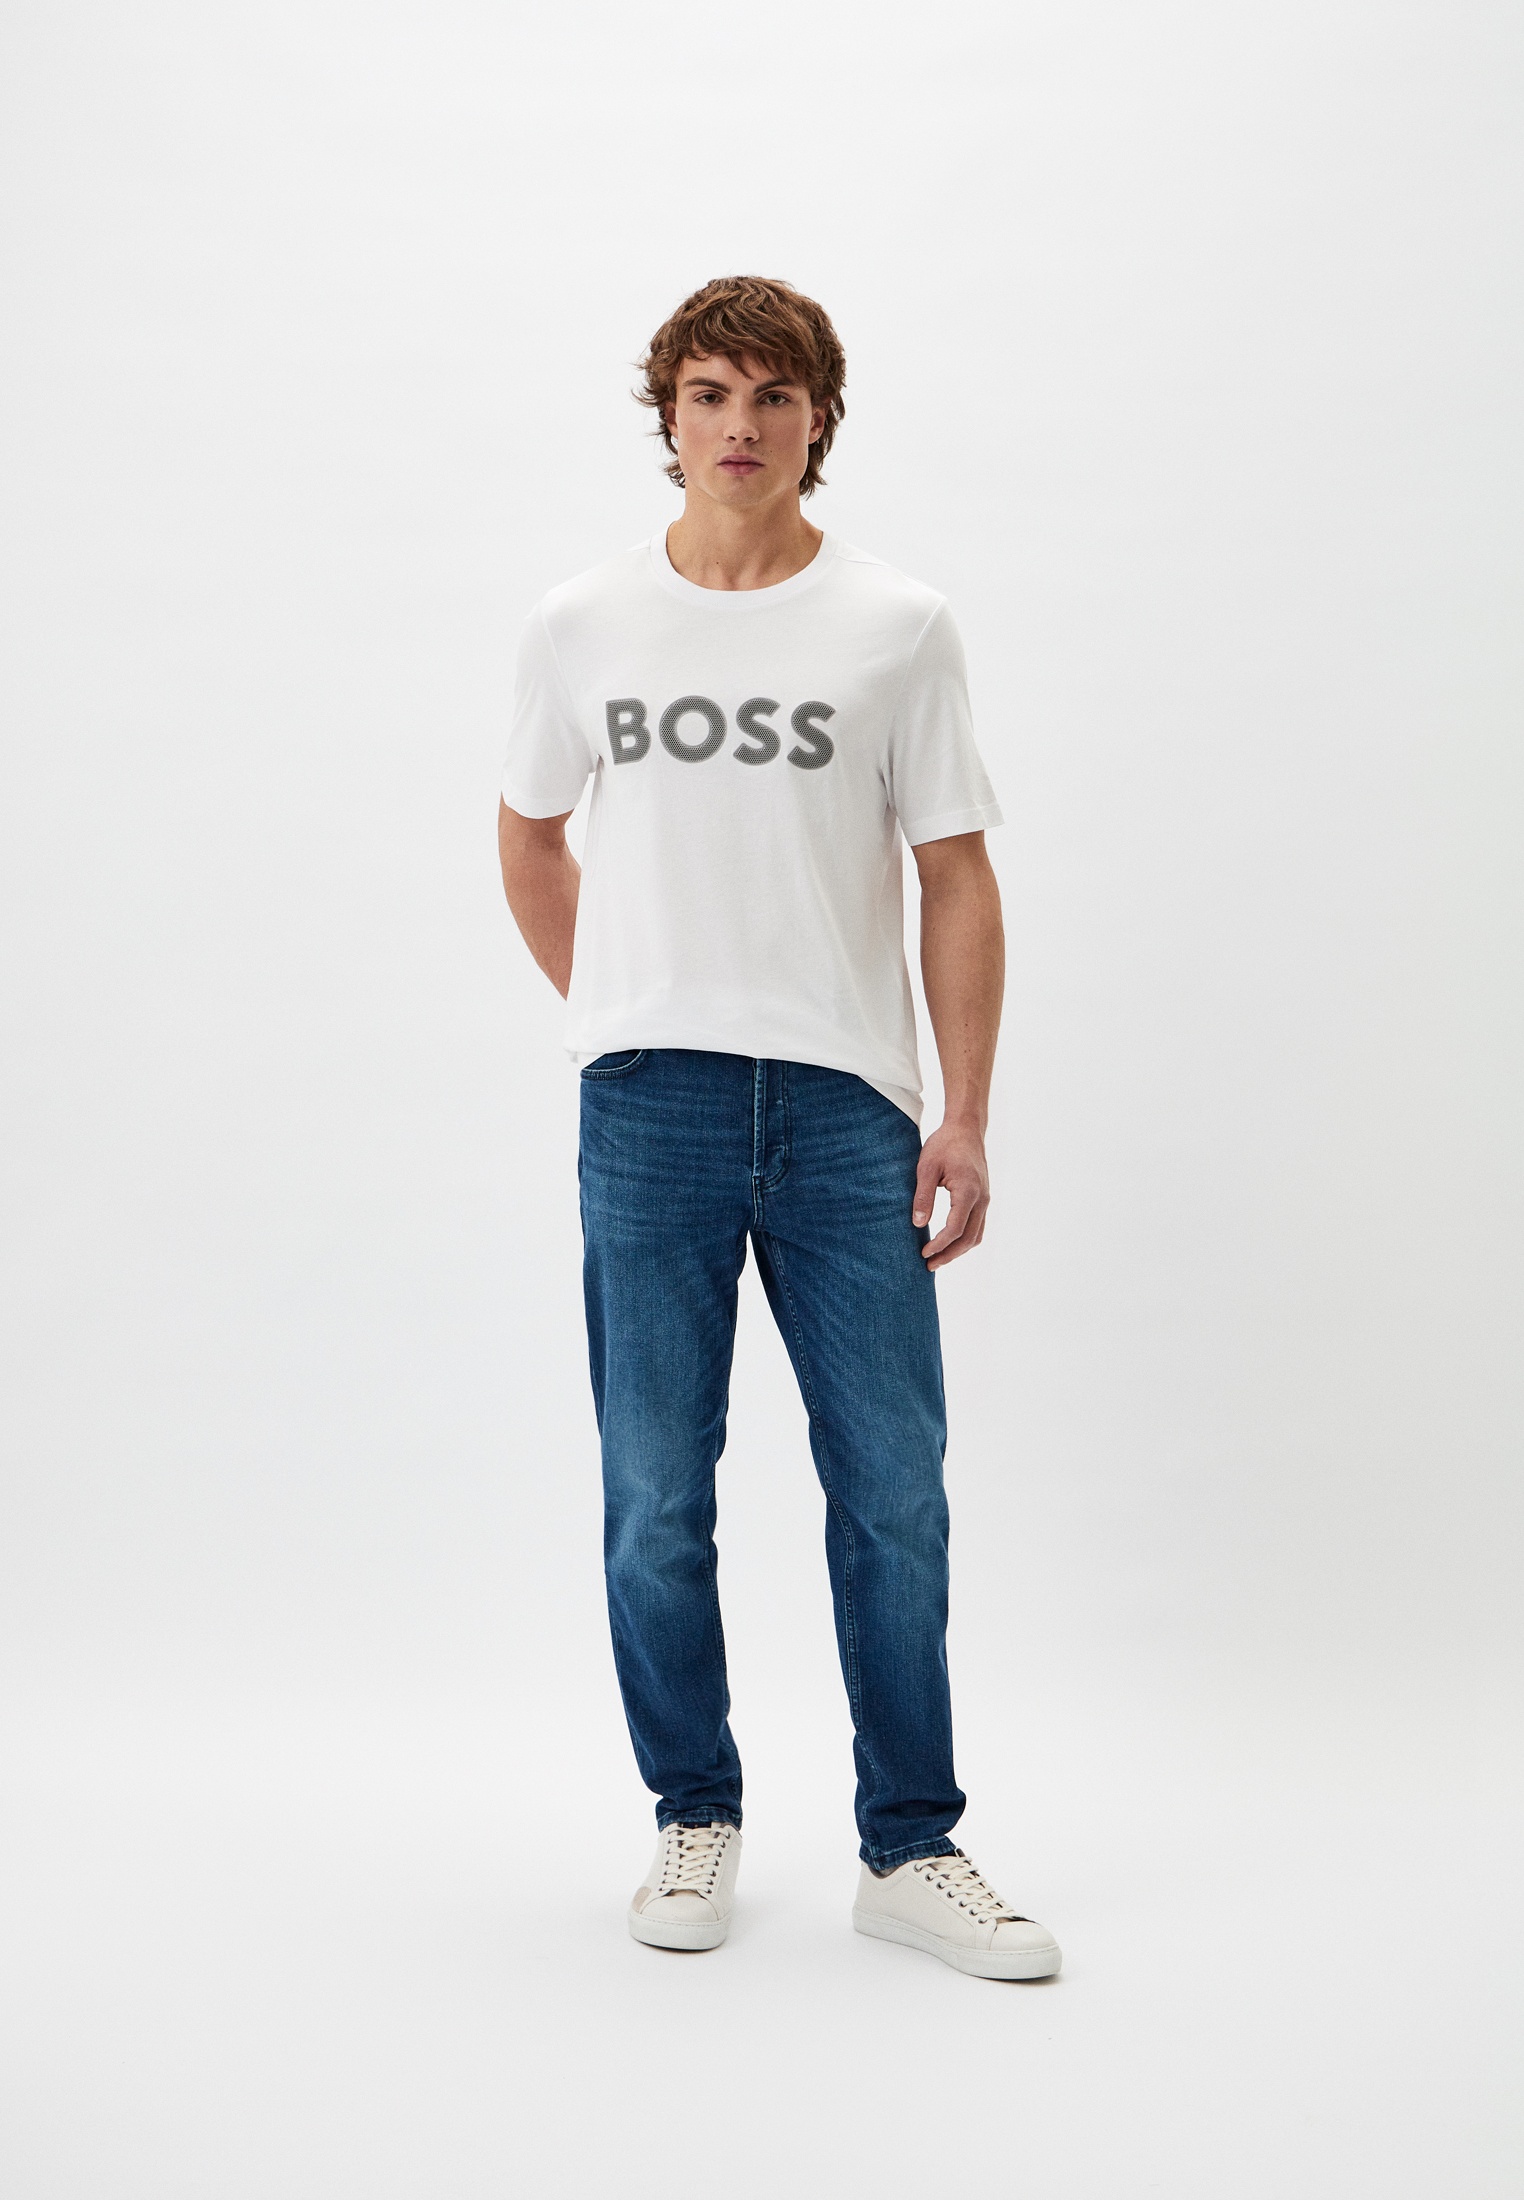 Мужская футболка Boss (Босс) 50512866: изображение 2